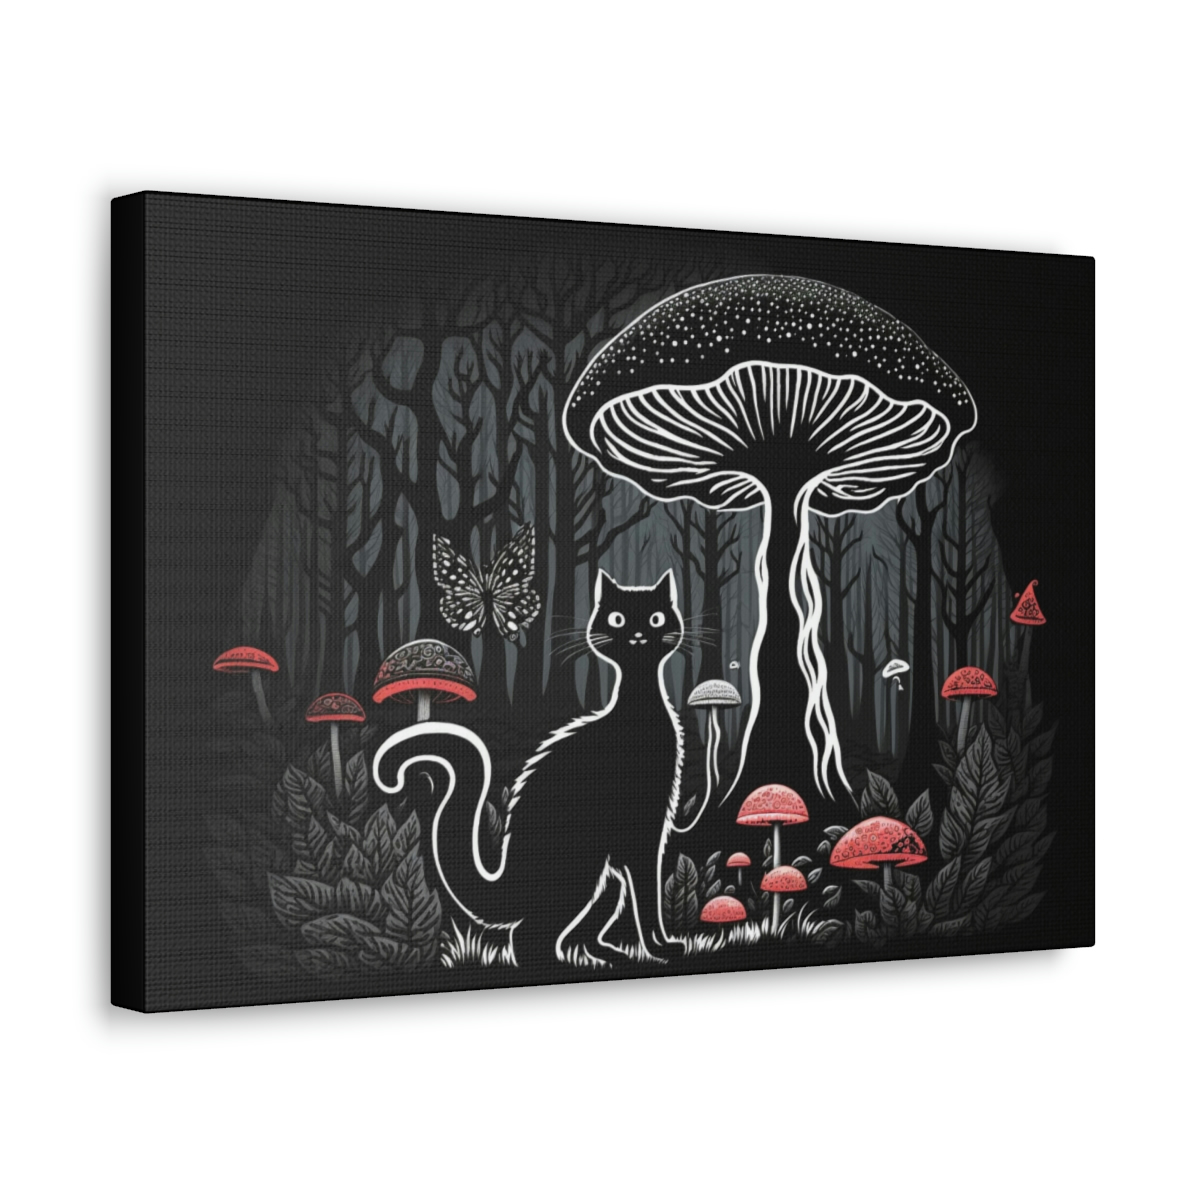 Mushroom Art Canvas Print: Salem’s Shroom